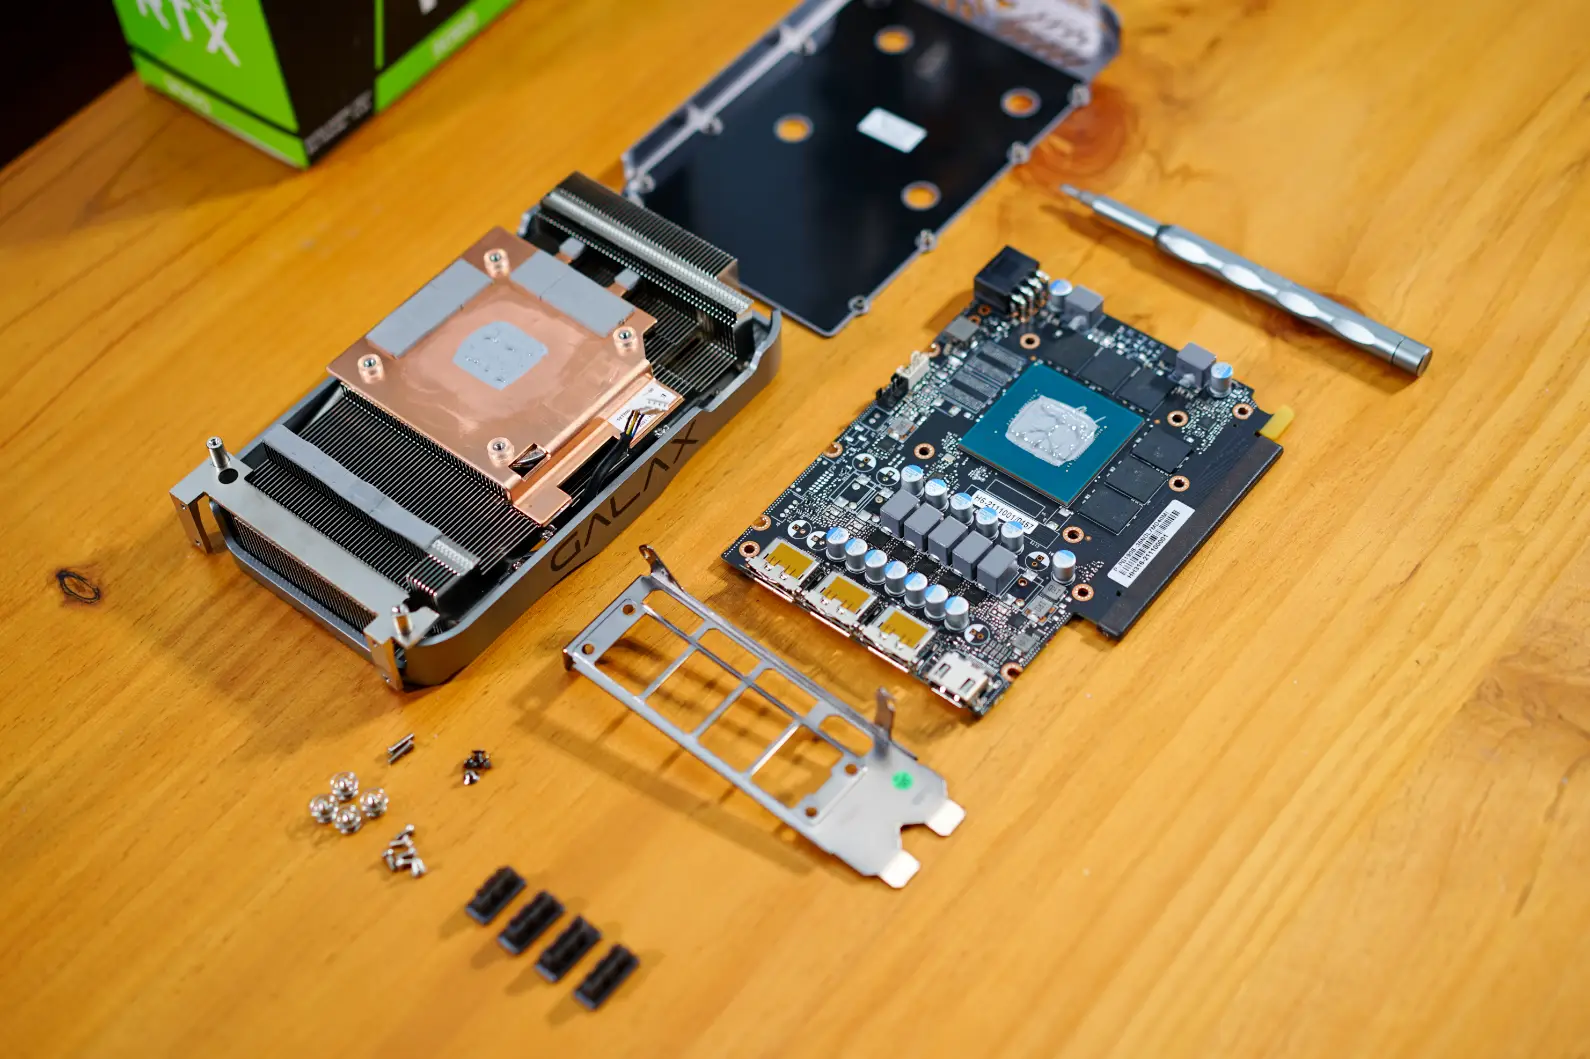 NVIDIA GeForce GTX 1650：千元预算下轻度游戏首选显卡，性能稳定，价格适中  第1张